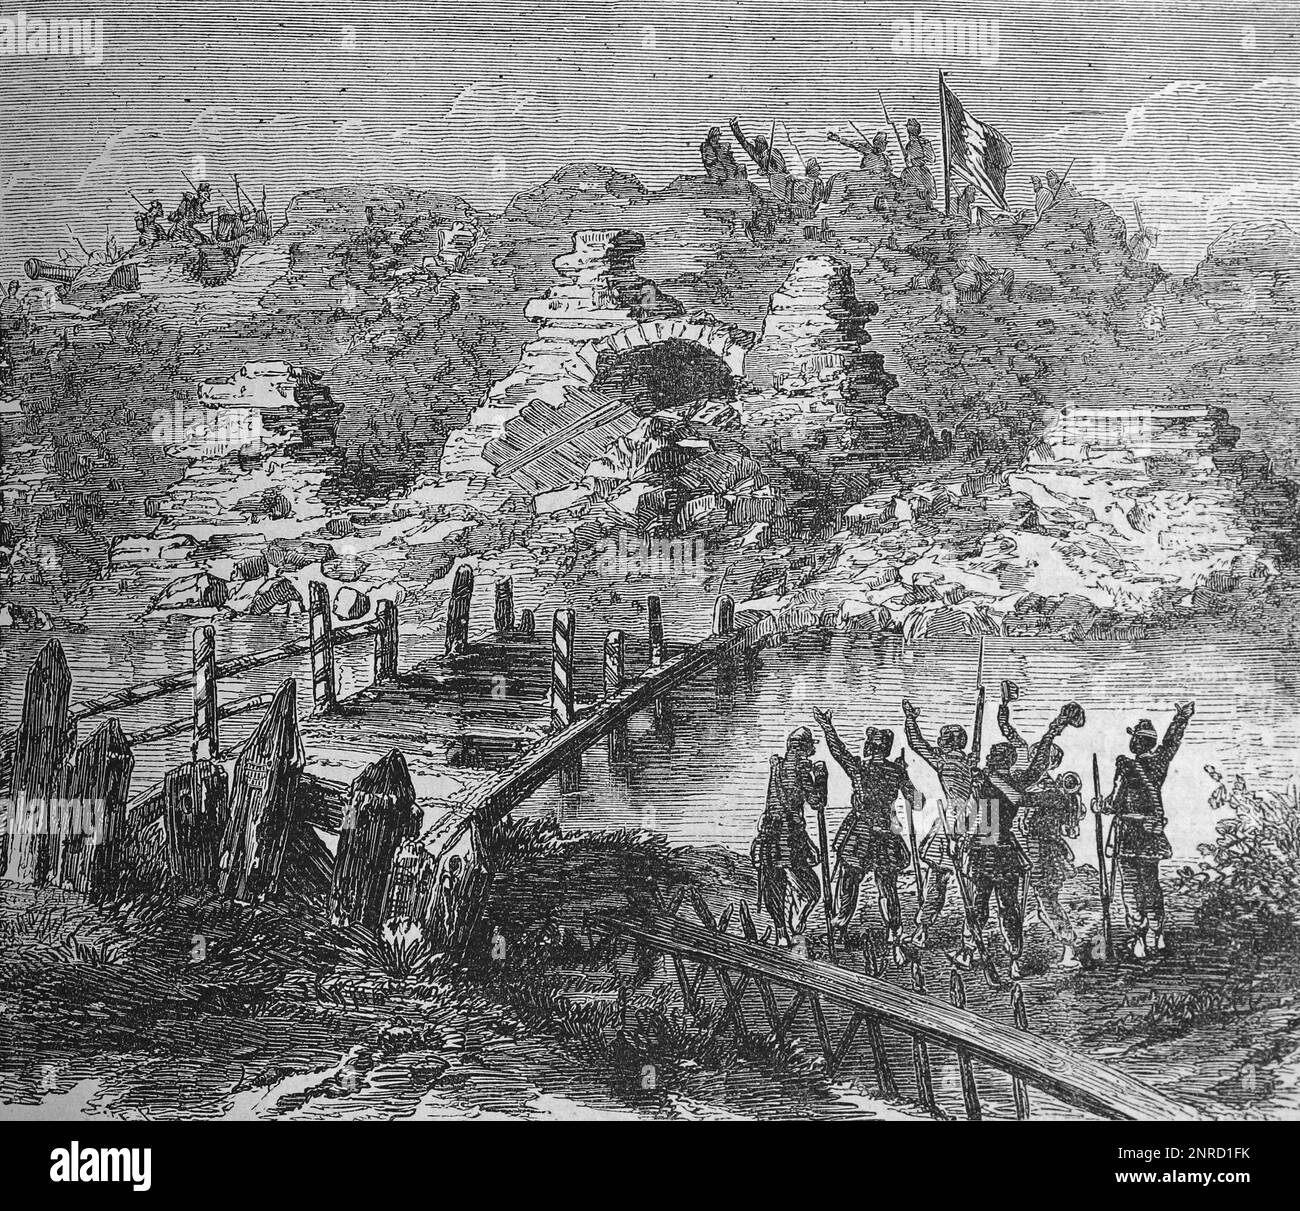 La forteresse de Kinburn à la suite du bombardement par les navires de la marine française et britannique, 17th octobre 1855. Ce devait être l'un des derniers engagements de la guerre de Crimée de 1853 à 1855. Illustration en noir et blanc Banque D'Images